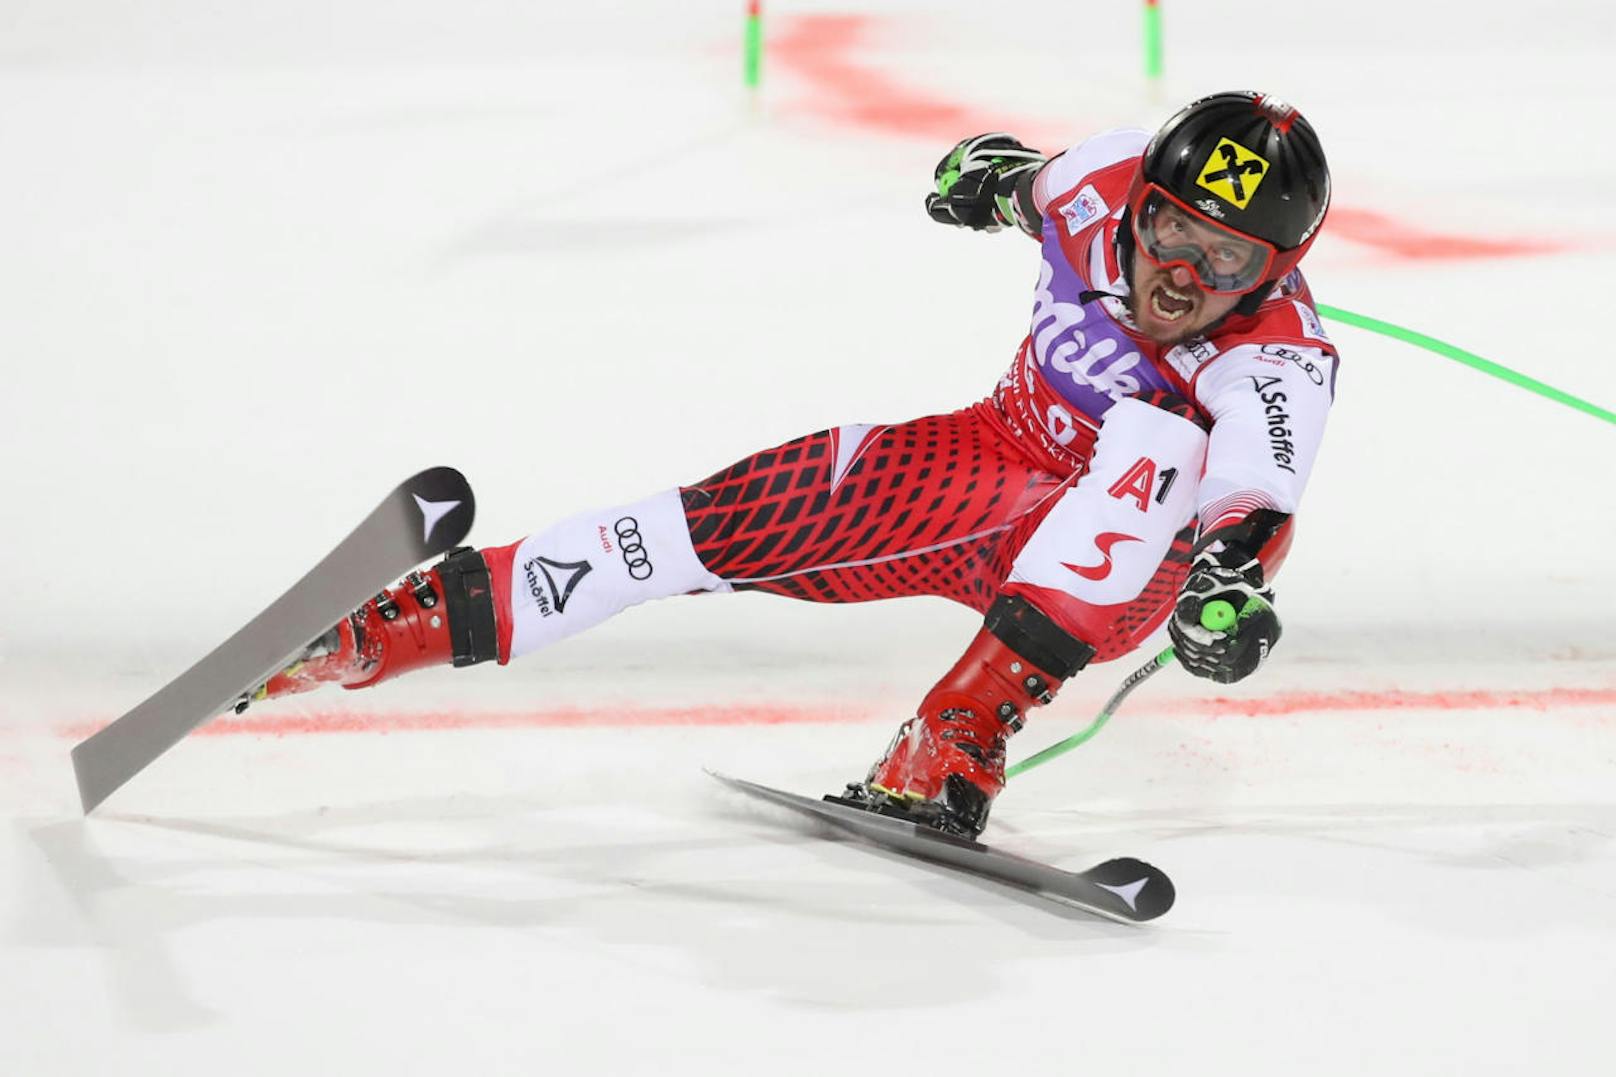 Marcel Hirscher im Beast-Mode! Die Konkurrenz bei der Ski-WM in Aare ist chancenlos im Slalom und RTL! Doppel-Gold für den siebenfachen Weltcup-Sieger. Er will aber trotzdem weitermachen.